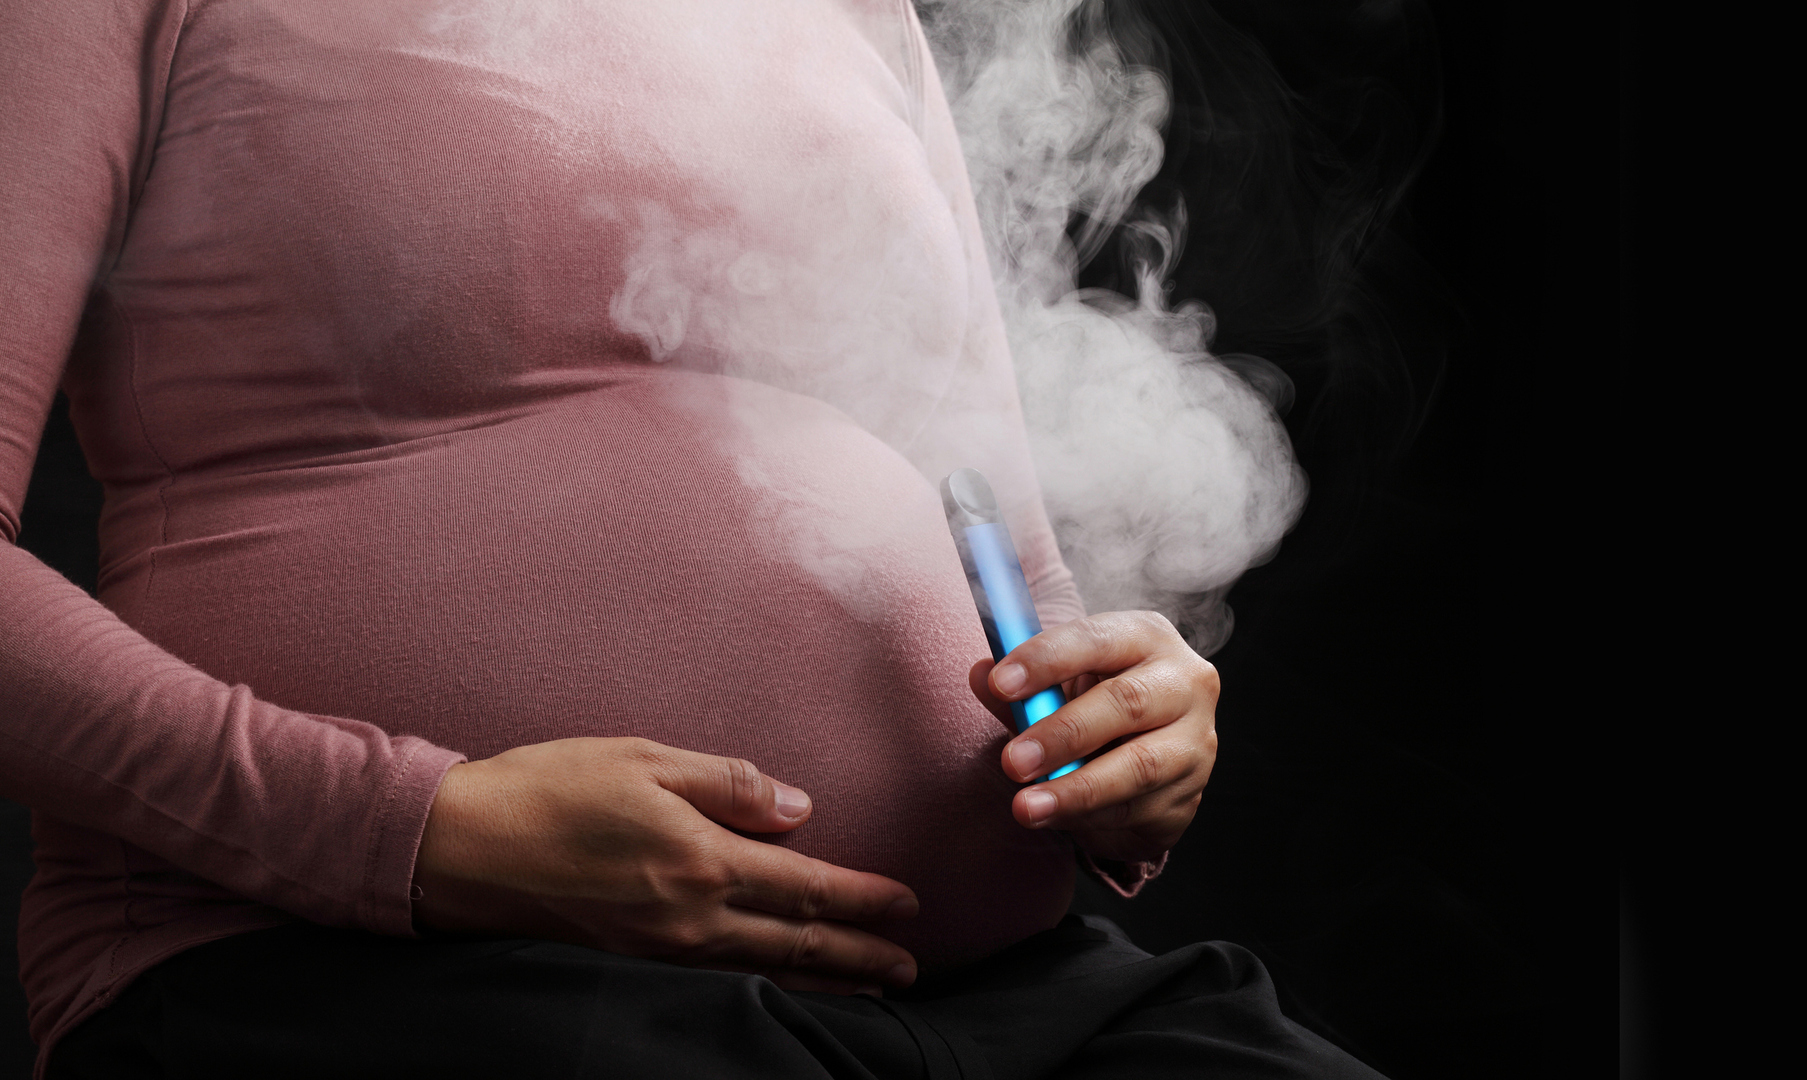 دراسة تكشف عن عواقب غير متوقعة على الأطفال للتدخين الإلكتروني أثناء الحمل!